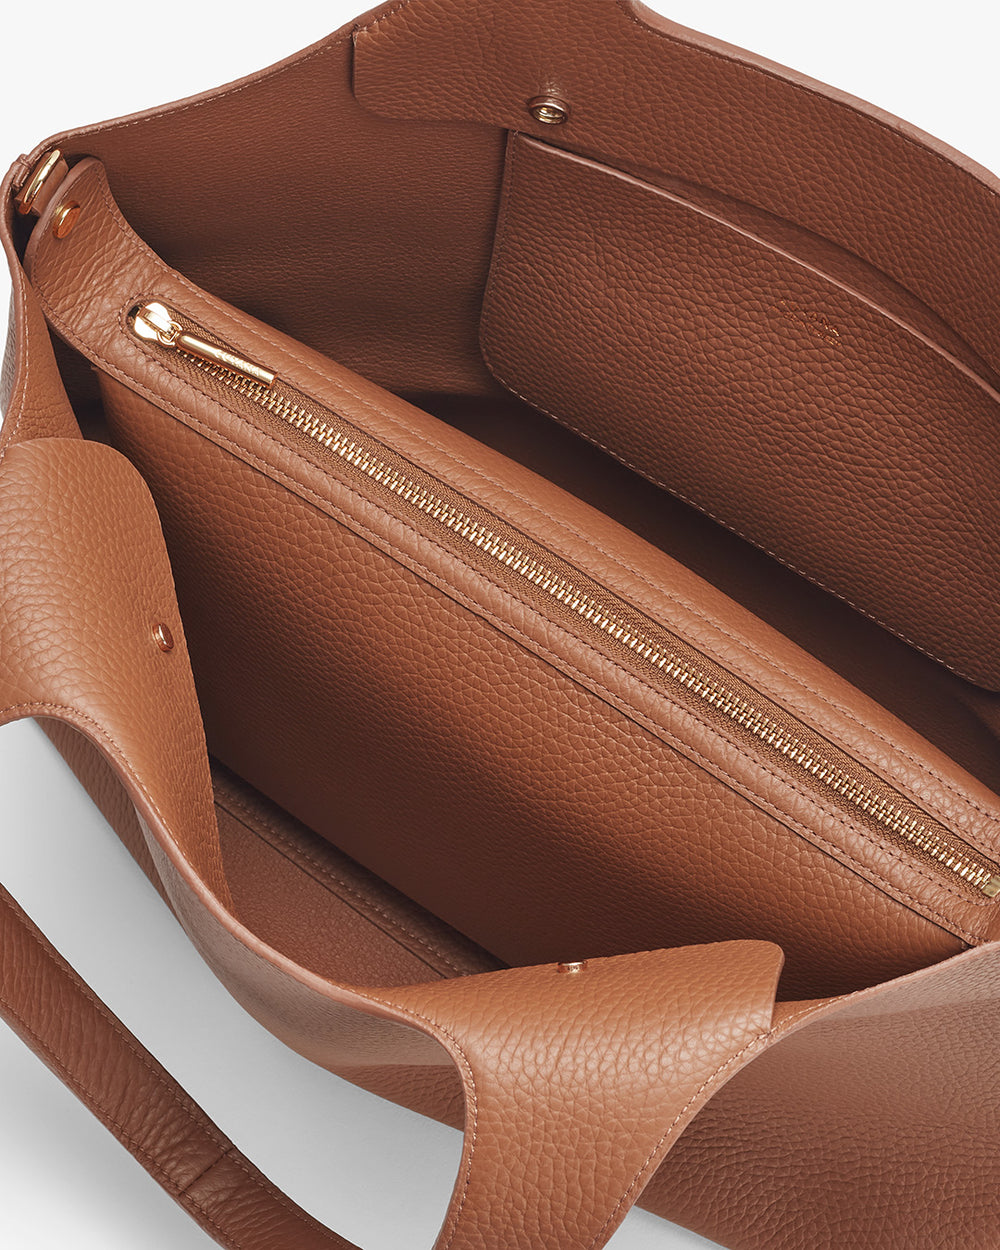 Open handbag showing interior and zipper compartment.